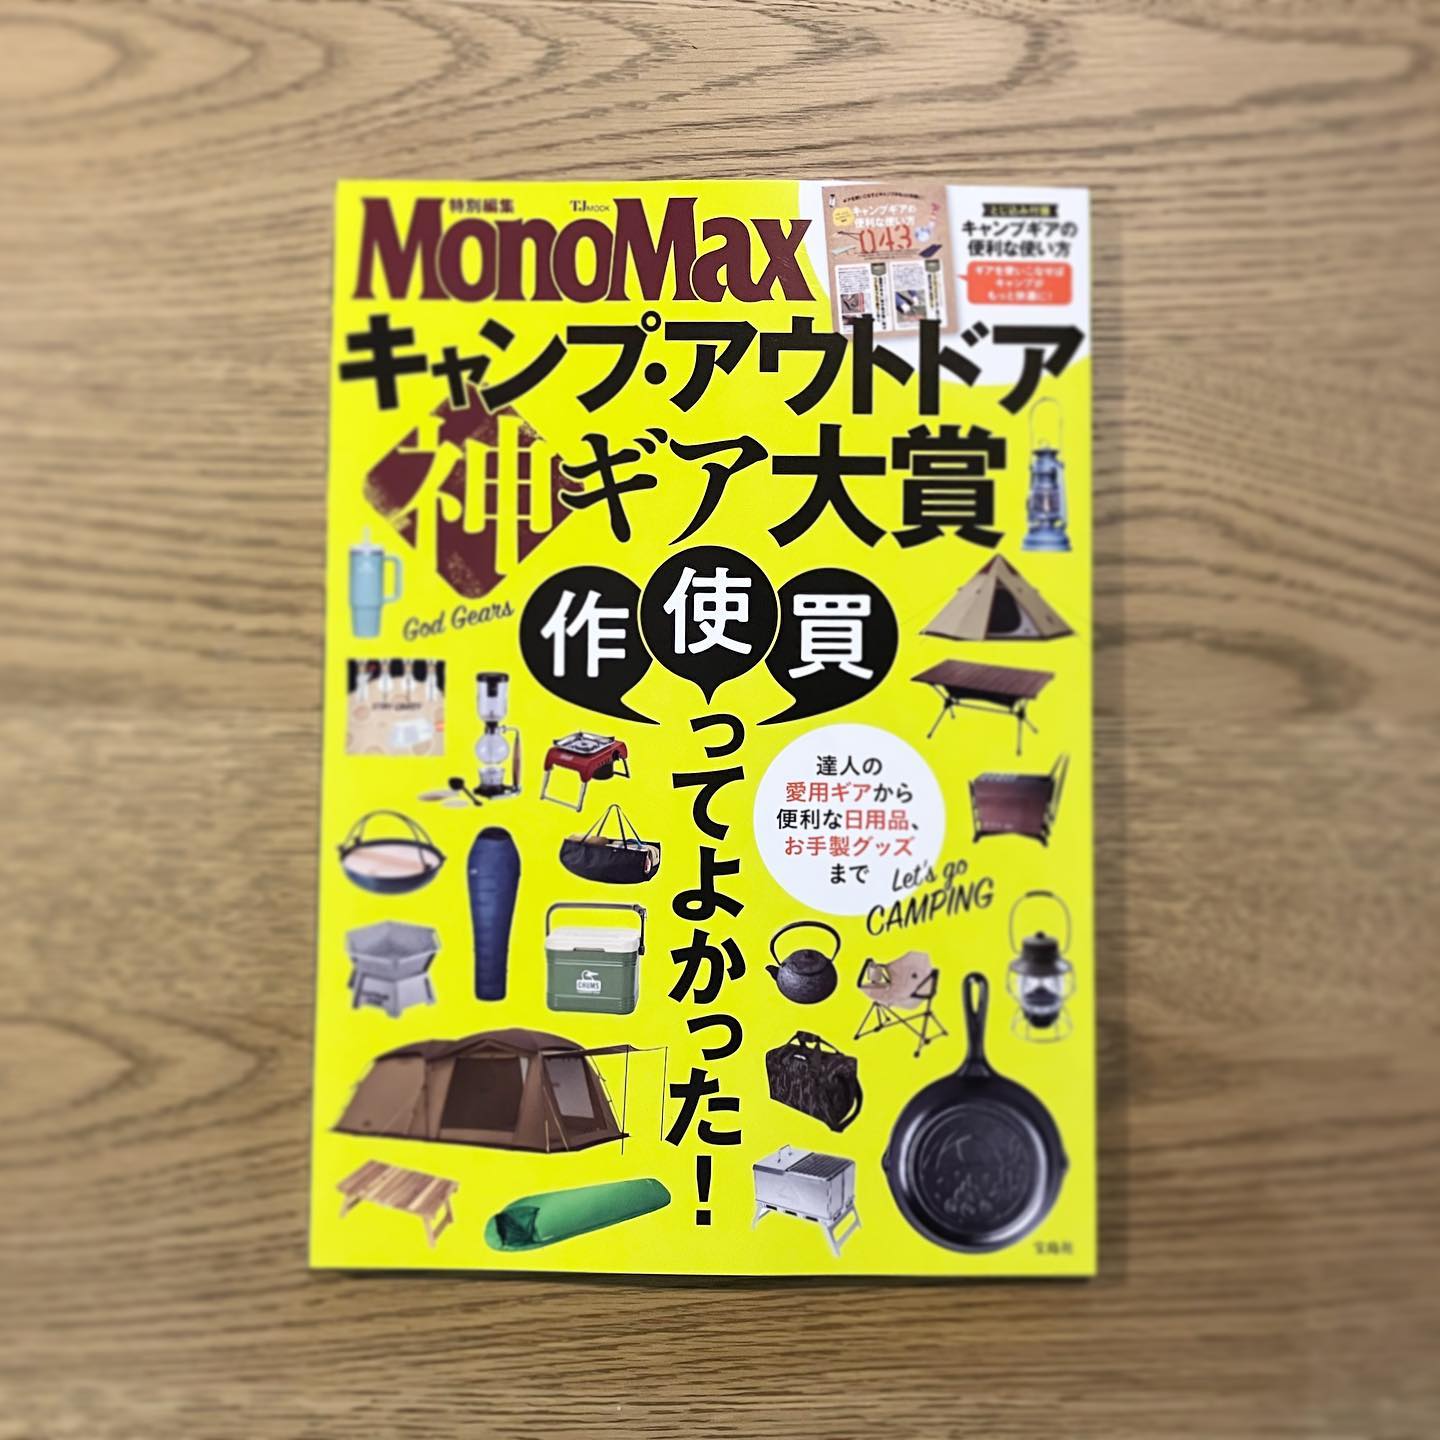 【雑誌掲載情報】『MonoMax特別編集 キャンプ・アウトドア 神ギア大賞』にLINKABLEが掲載されました